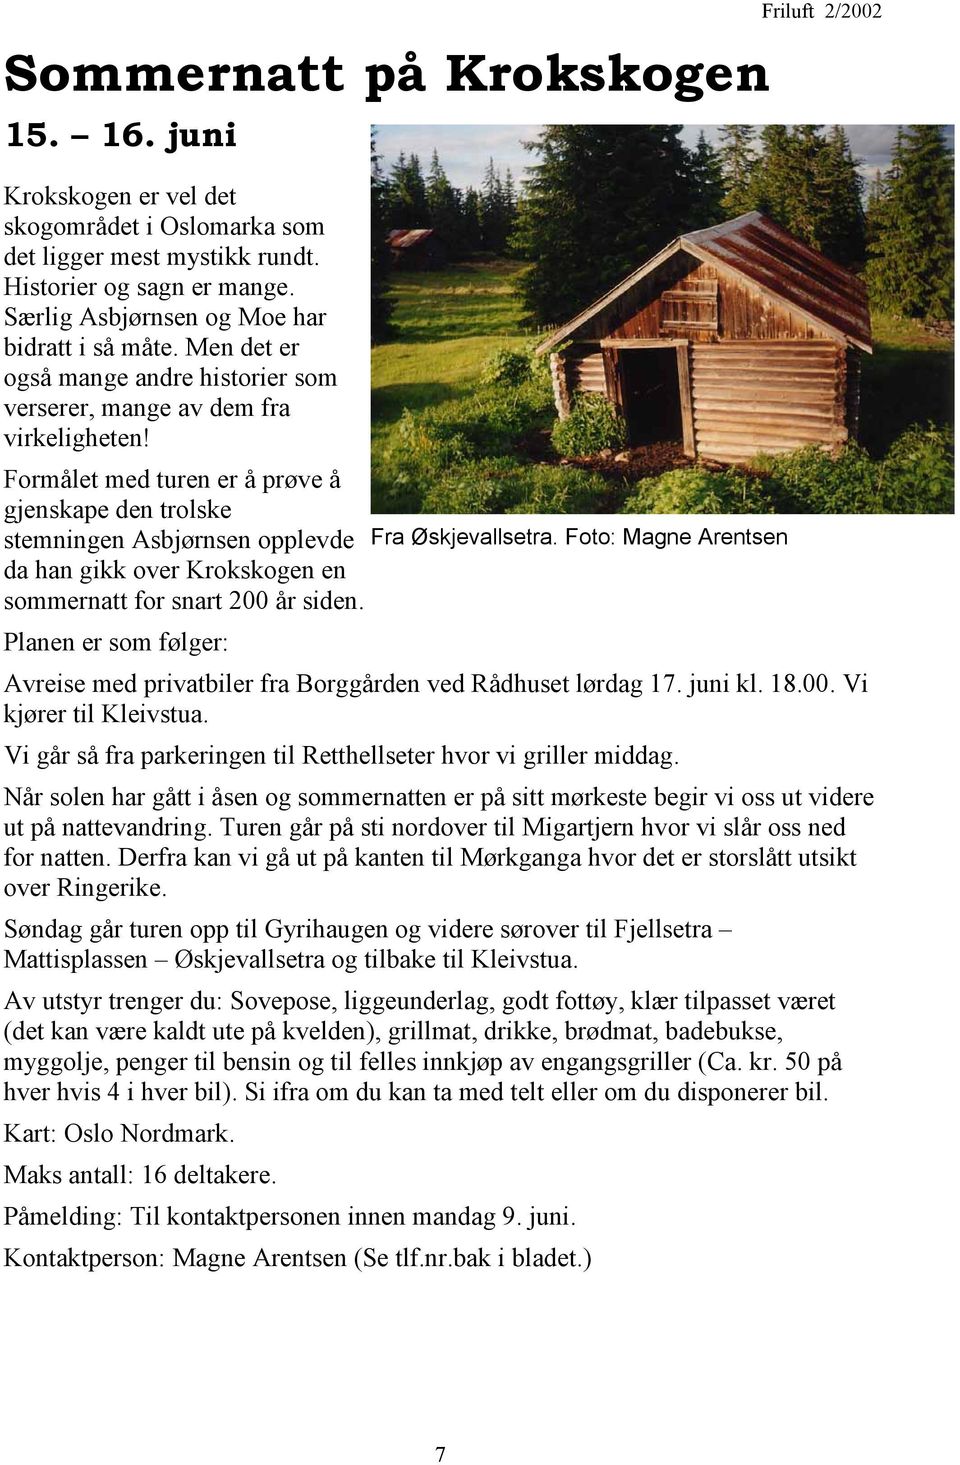 Foto: Magne Arentsen da han gikk over Krokskogen en sommernatt for snart 200 år siden. Planen er som følger: Avreise med privatbiler fra Borggården ved Rådhuset lørdag 17. juni kl. 18.00. Vi kjører til Kleivstua.